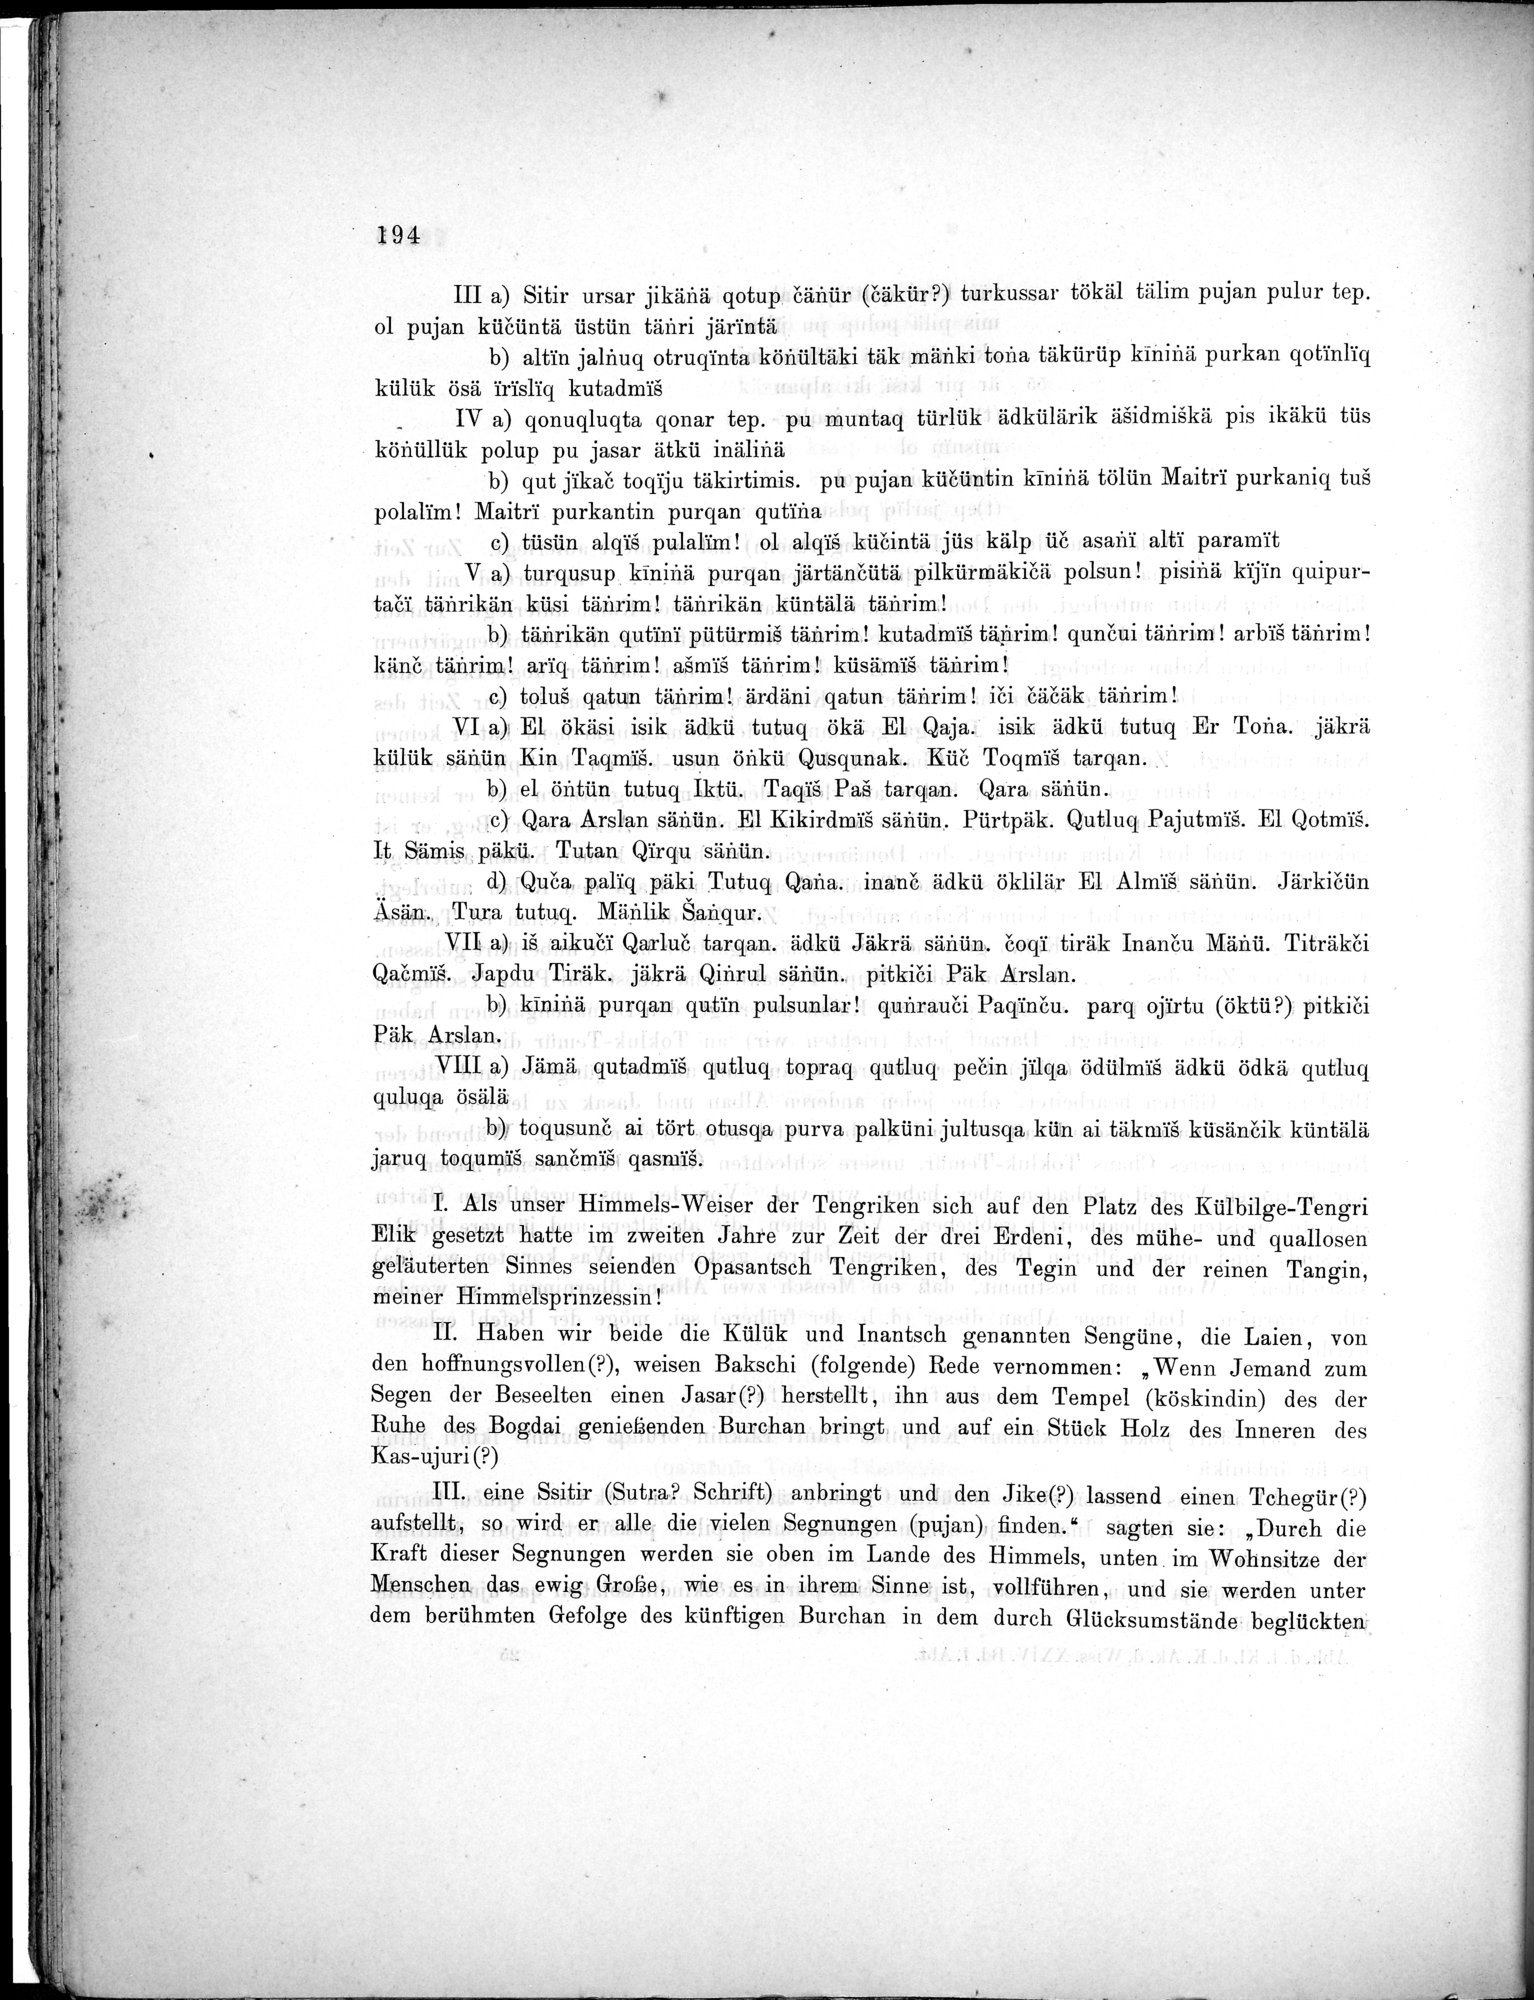 Bericht über archäologische Arbeiten in Idikutschari und Umgebung im Winter 1902-1903 : vol.1 / Page 204 (Grayscale High Resolution Image)